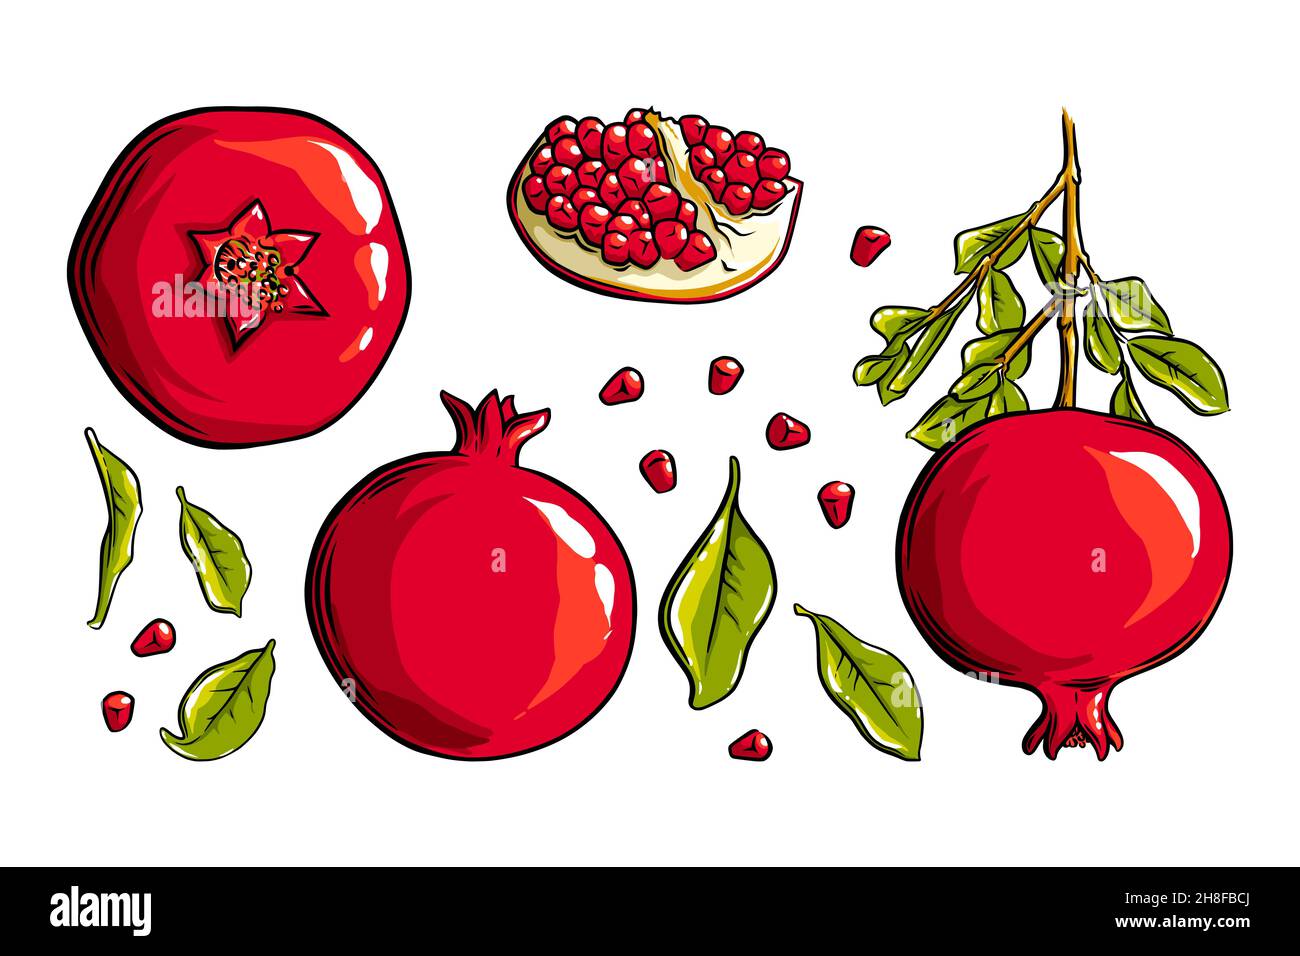 Granatapfelfrucht, Samen und Pflanze. Farbige exotische Granatapfelfrucht. Vektorgrafik isoliert auf weißem Hintergrund Stock Vektor